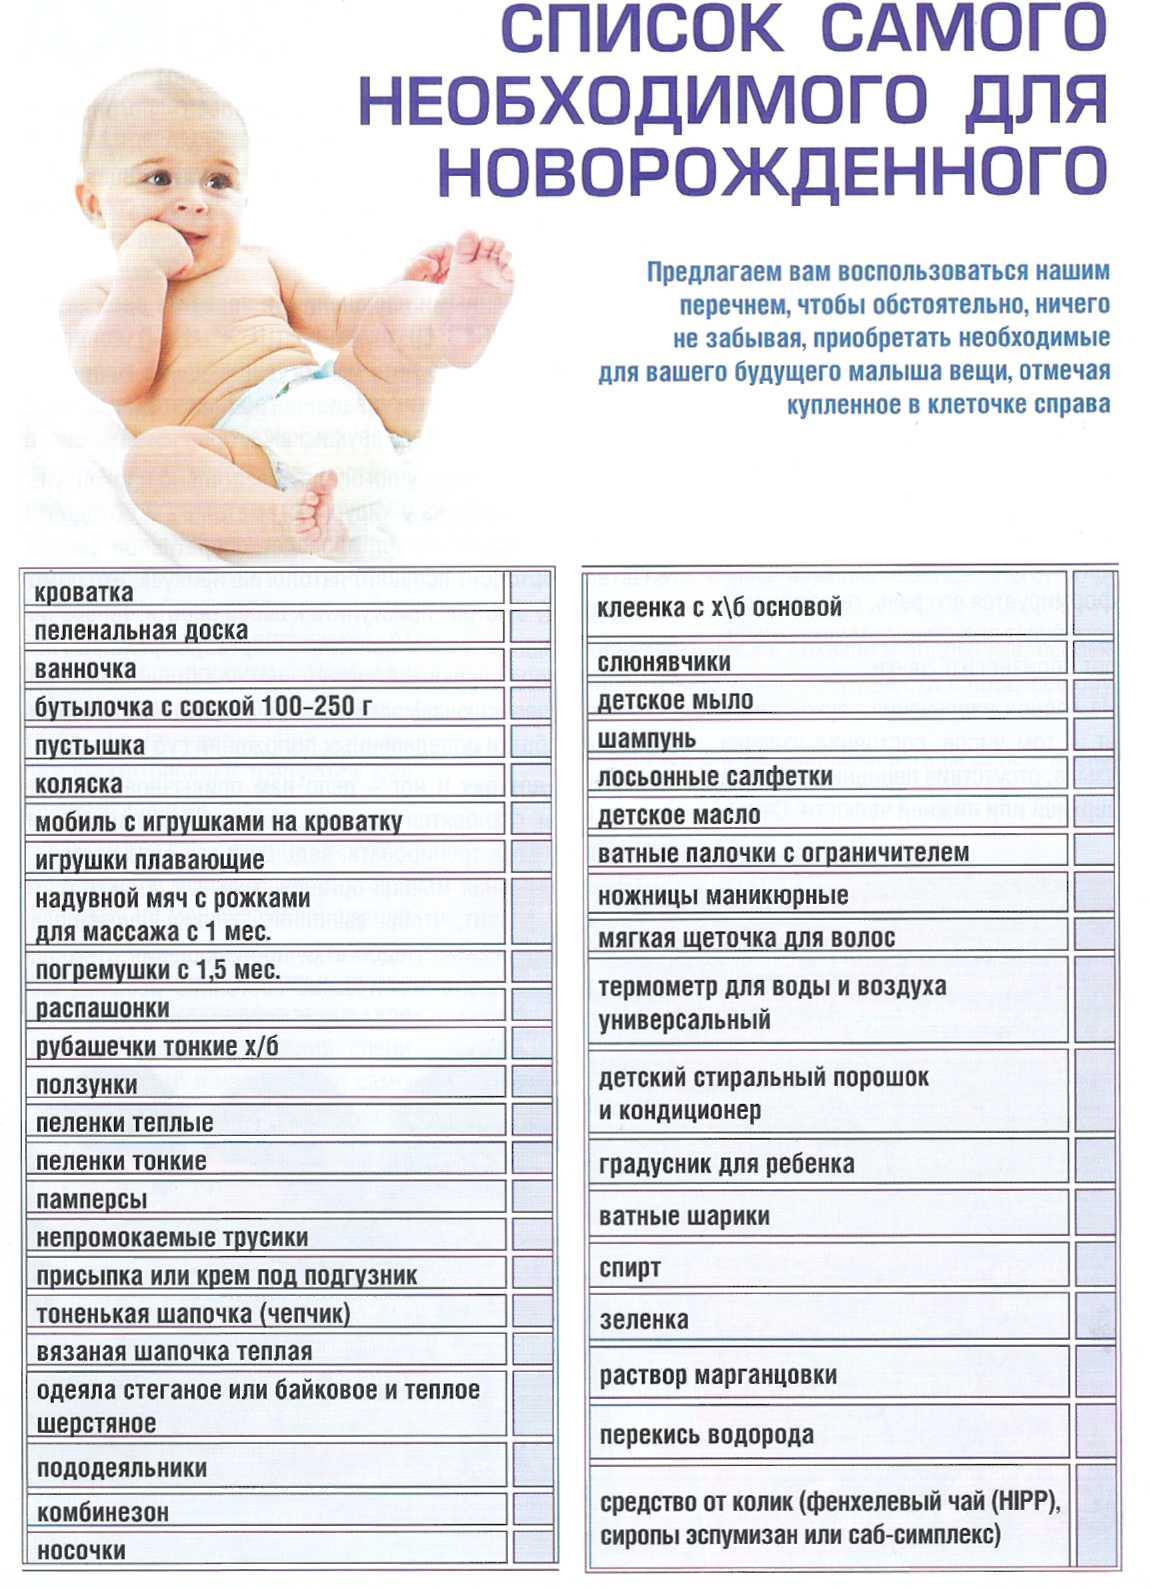 Список вещей для новорожденного осенью на первое время